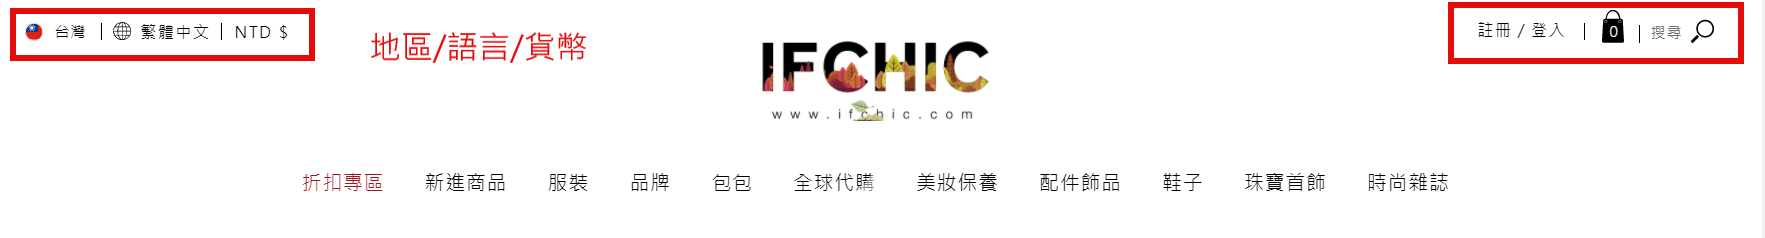 Ifchic註冊教學